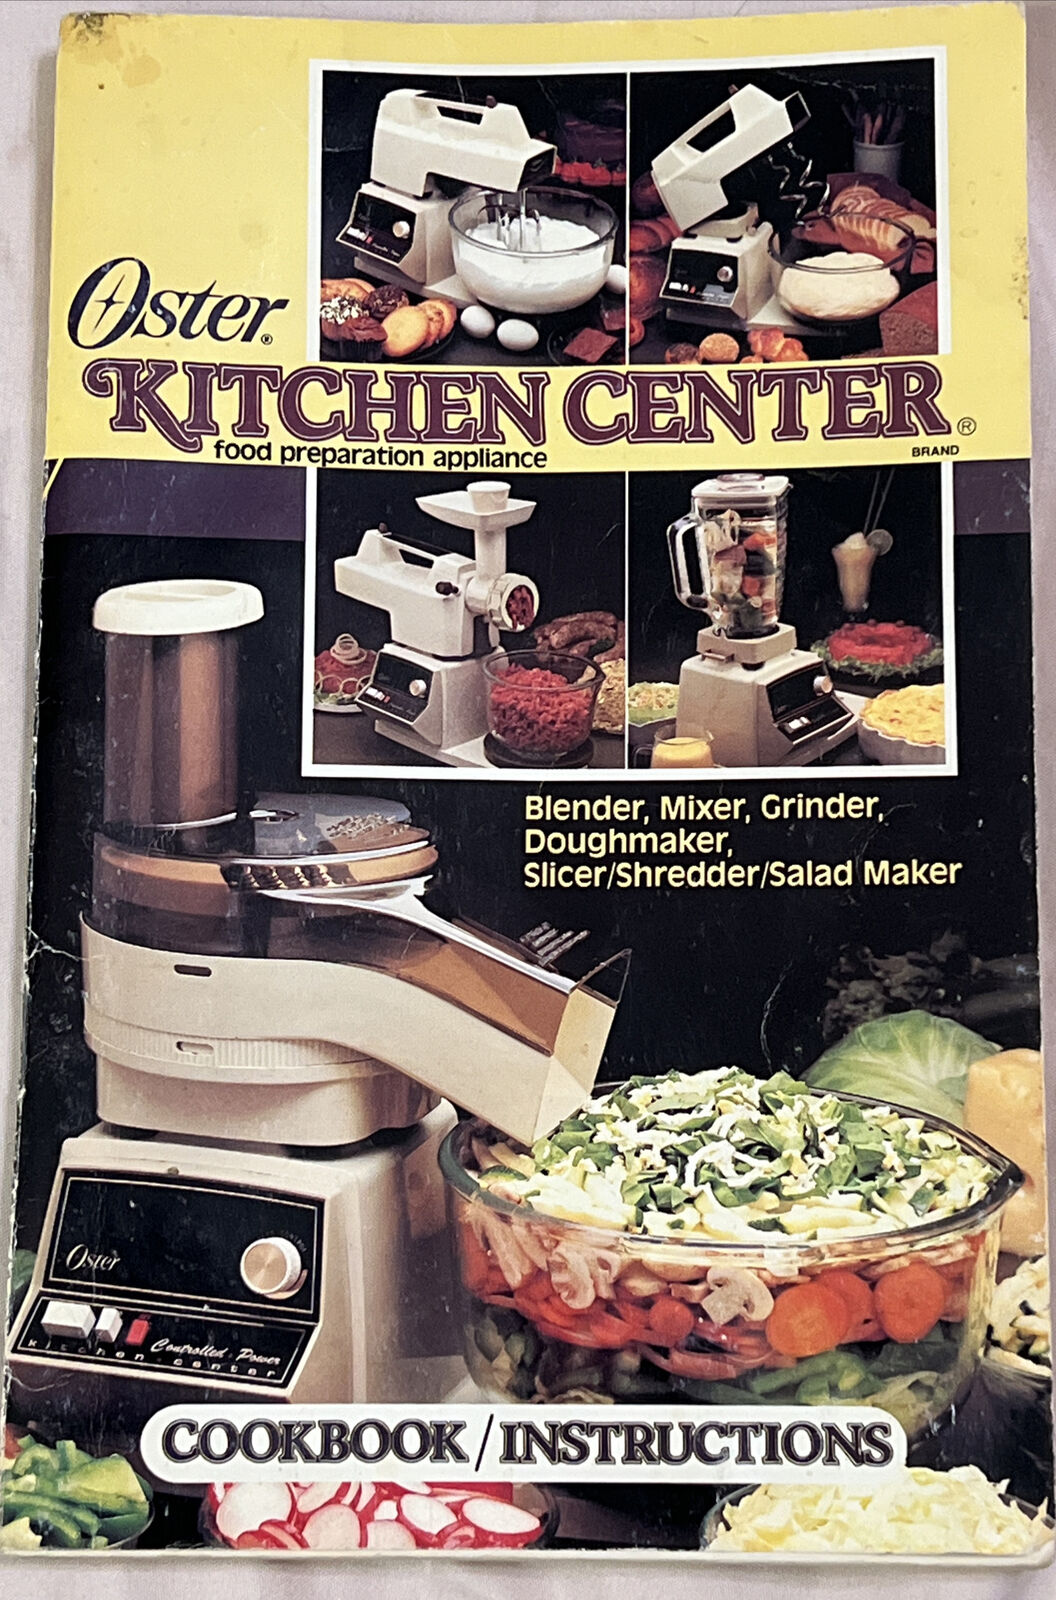 Oster Kitchen Center Food Preparation Appliance Cookbook Instructions VTG 1984